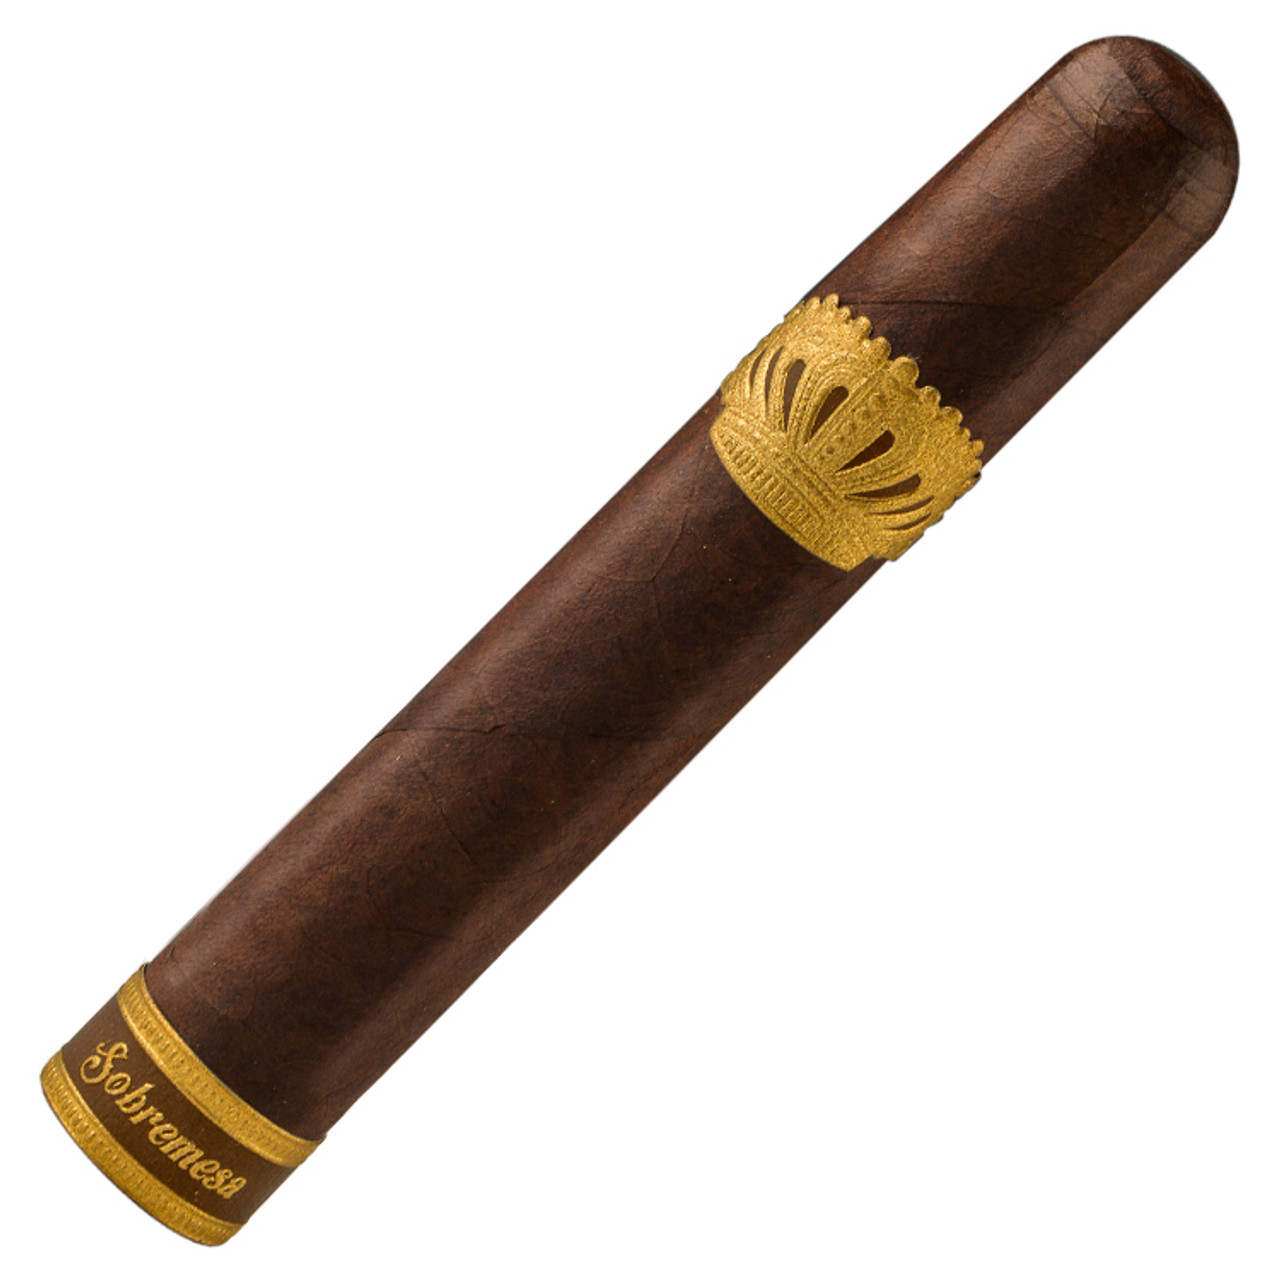 Sobremesa Short Churchill Cigars - 4.75 x 48 Single